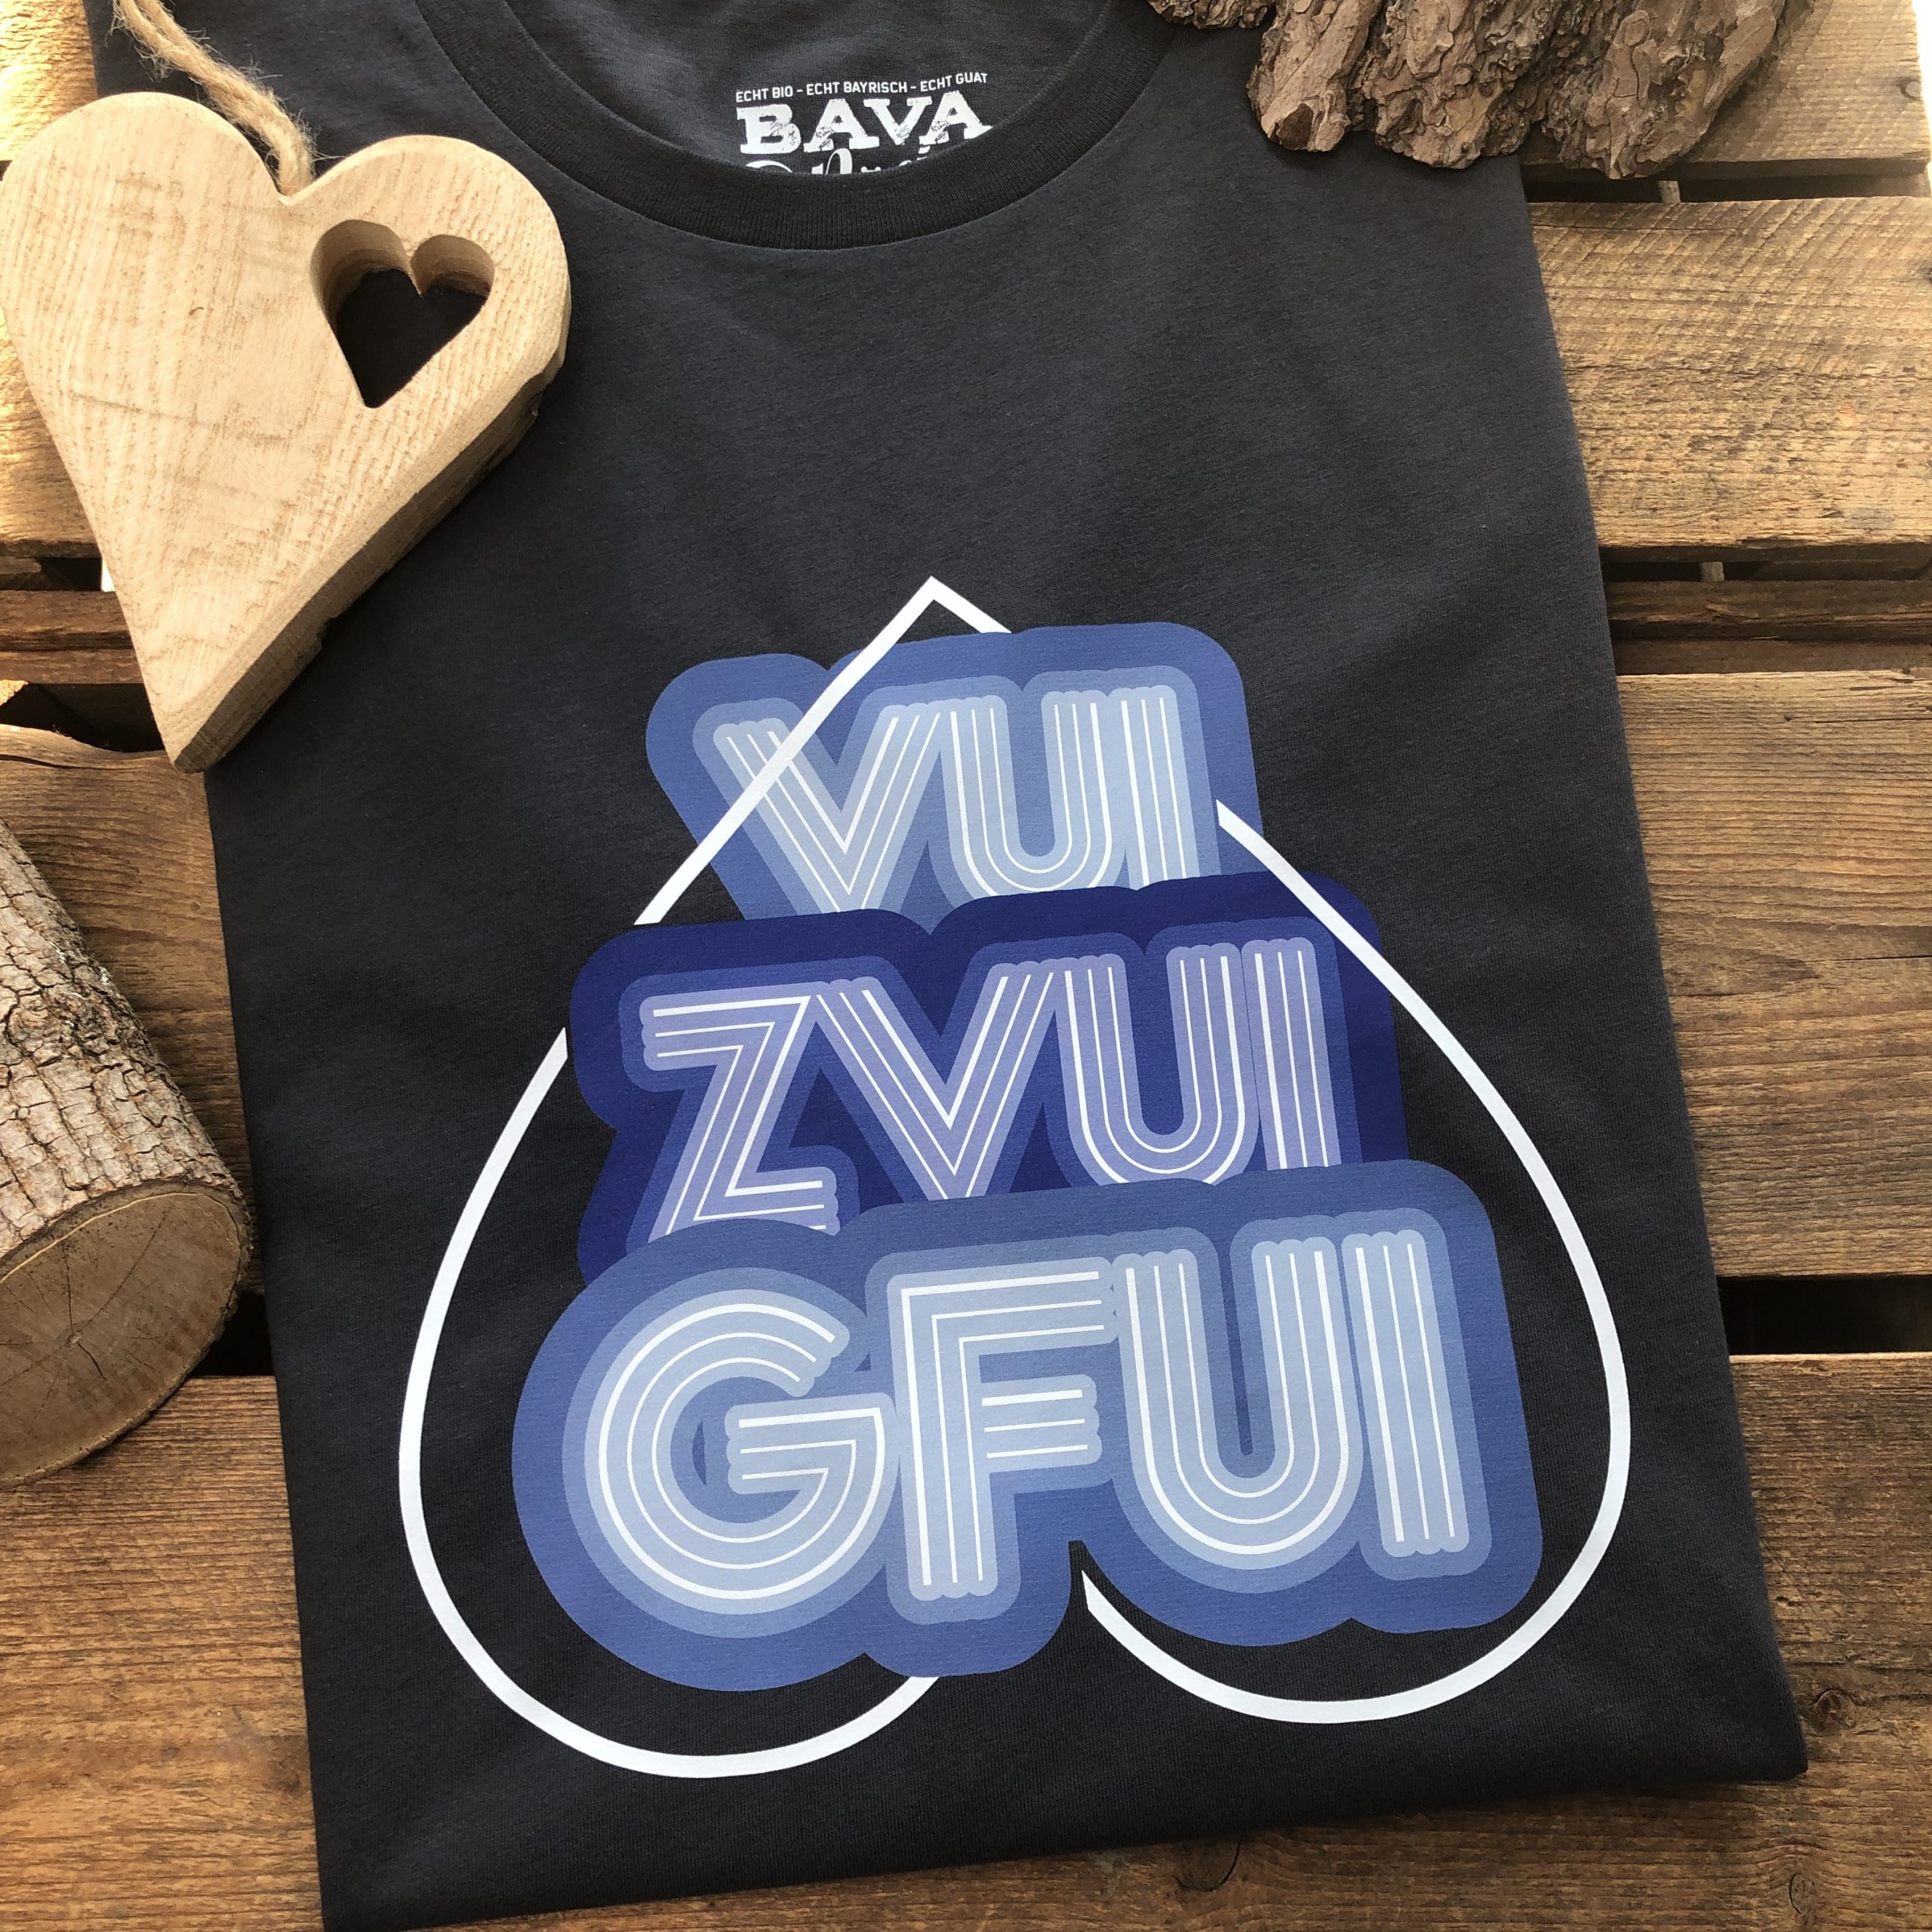 Vui Zfui Gfui T-Shirt Bavarosi Fashion